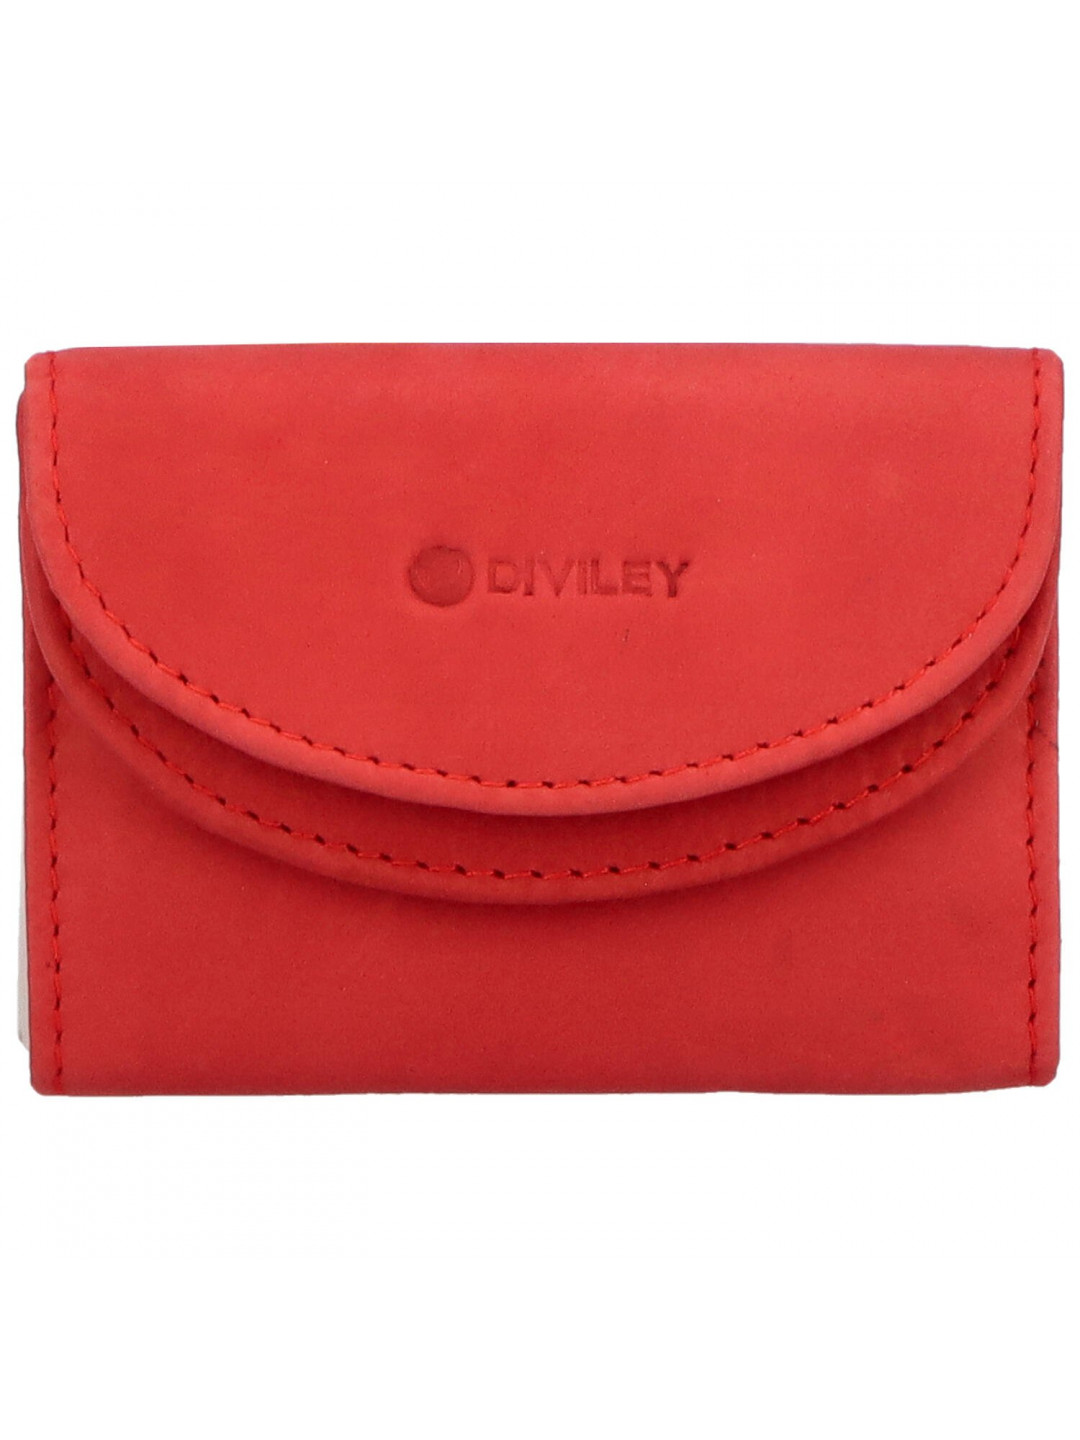 Dámská kožená peněženka červená – Diviley Skaidra